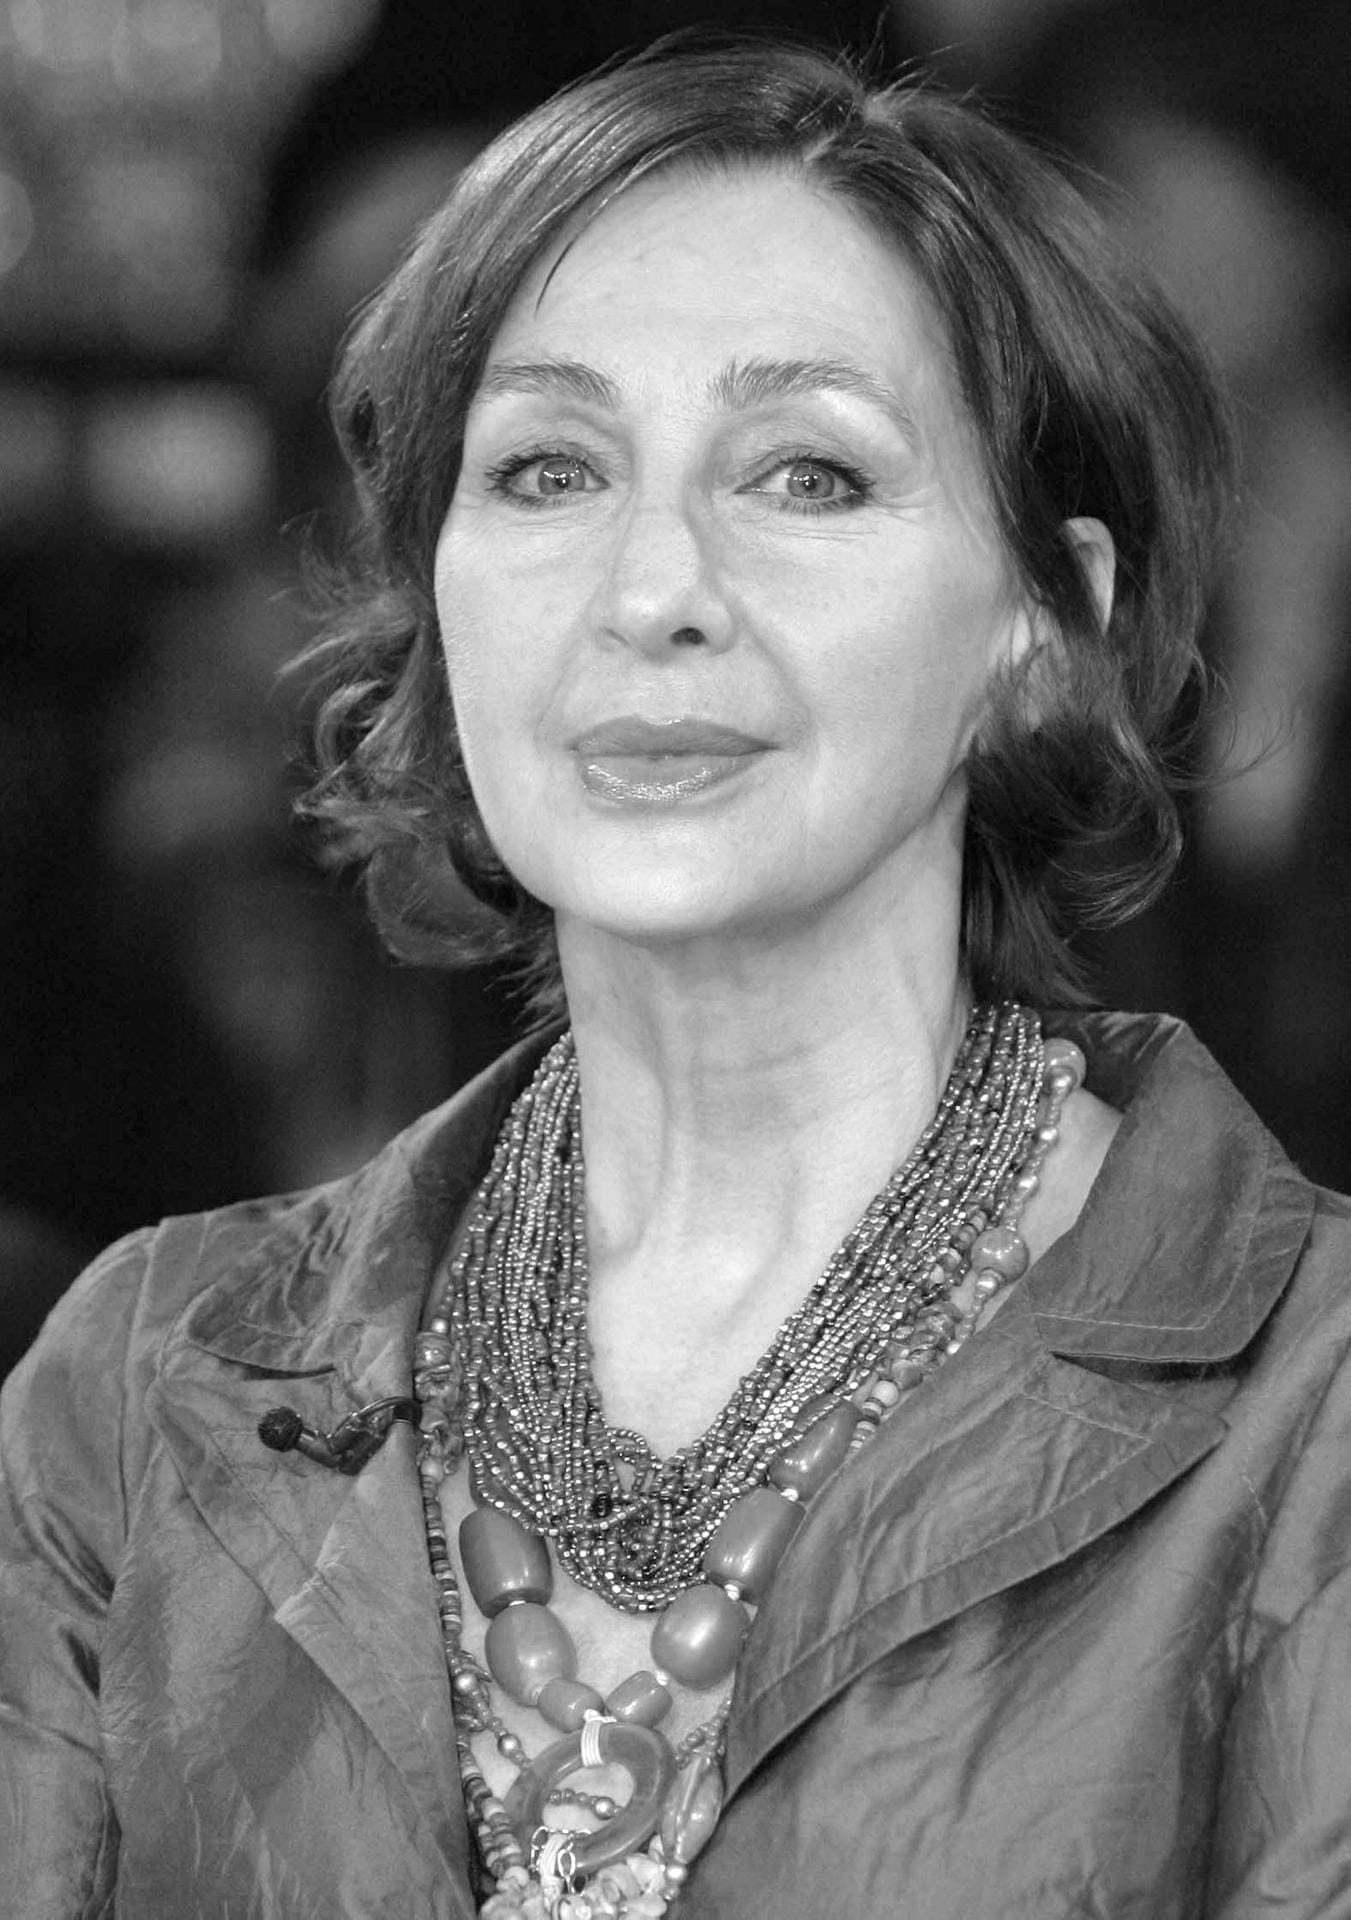 Schauspielerin Christine Kaufmann ist in der Nacht zum 28. März 2017 im Alter von 72 Jahren gestorben.